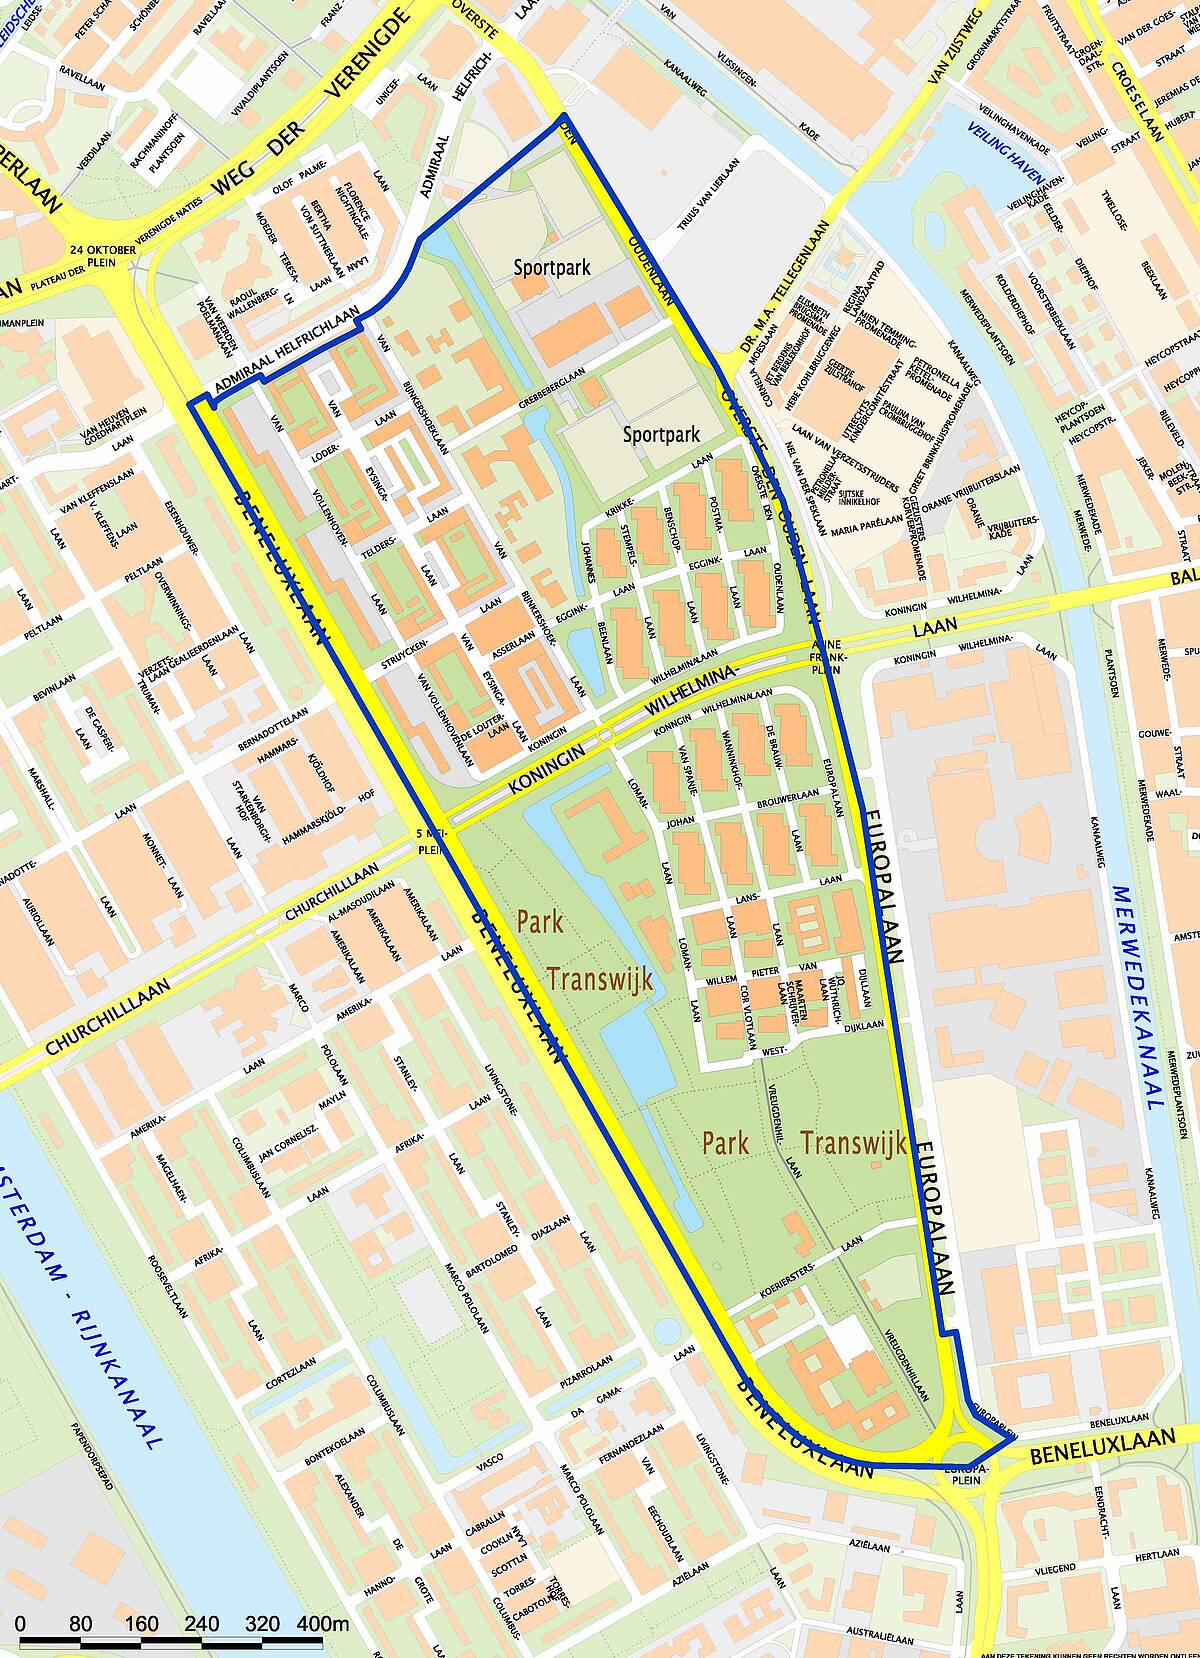 Overzichtskaart van Transwijk, met de daarop de straten waar betaald parkeren komt